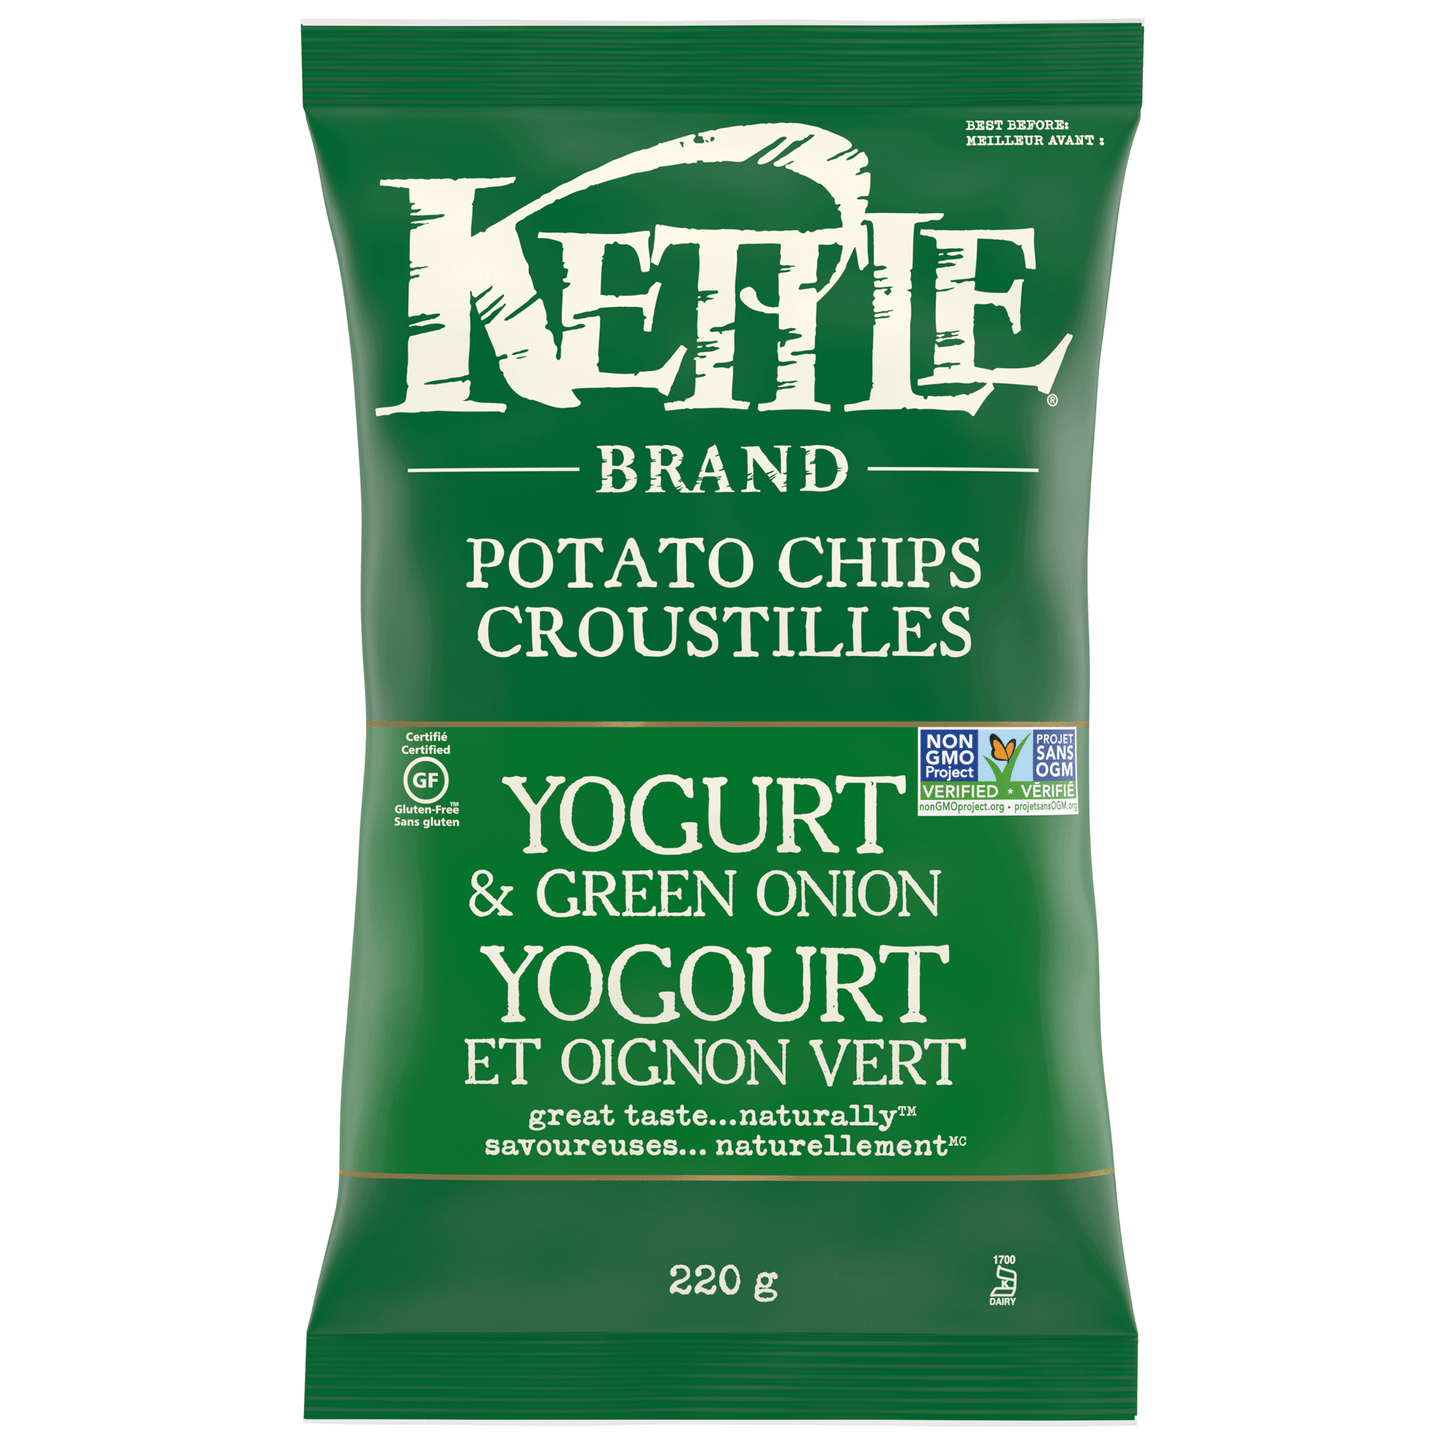 Kettle Yogurt & Green Onion